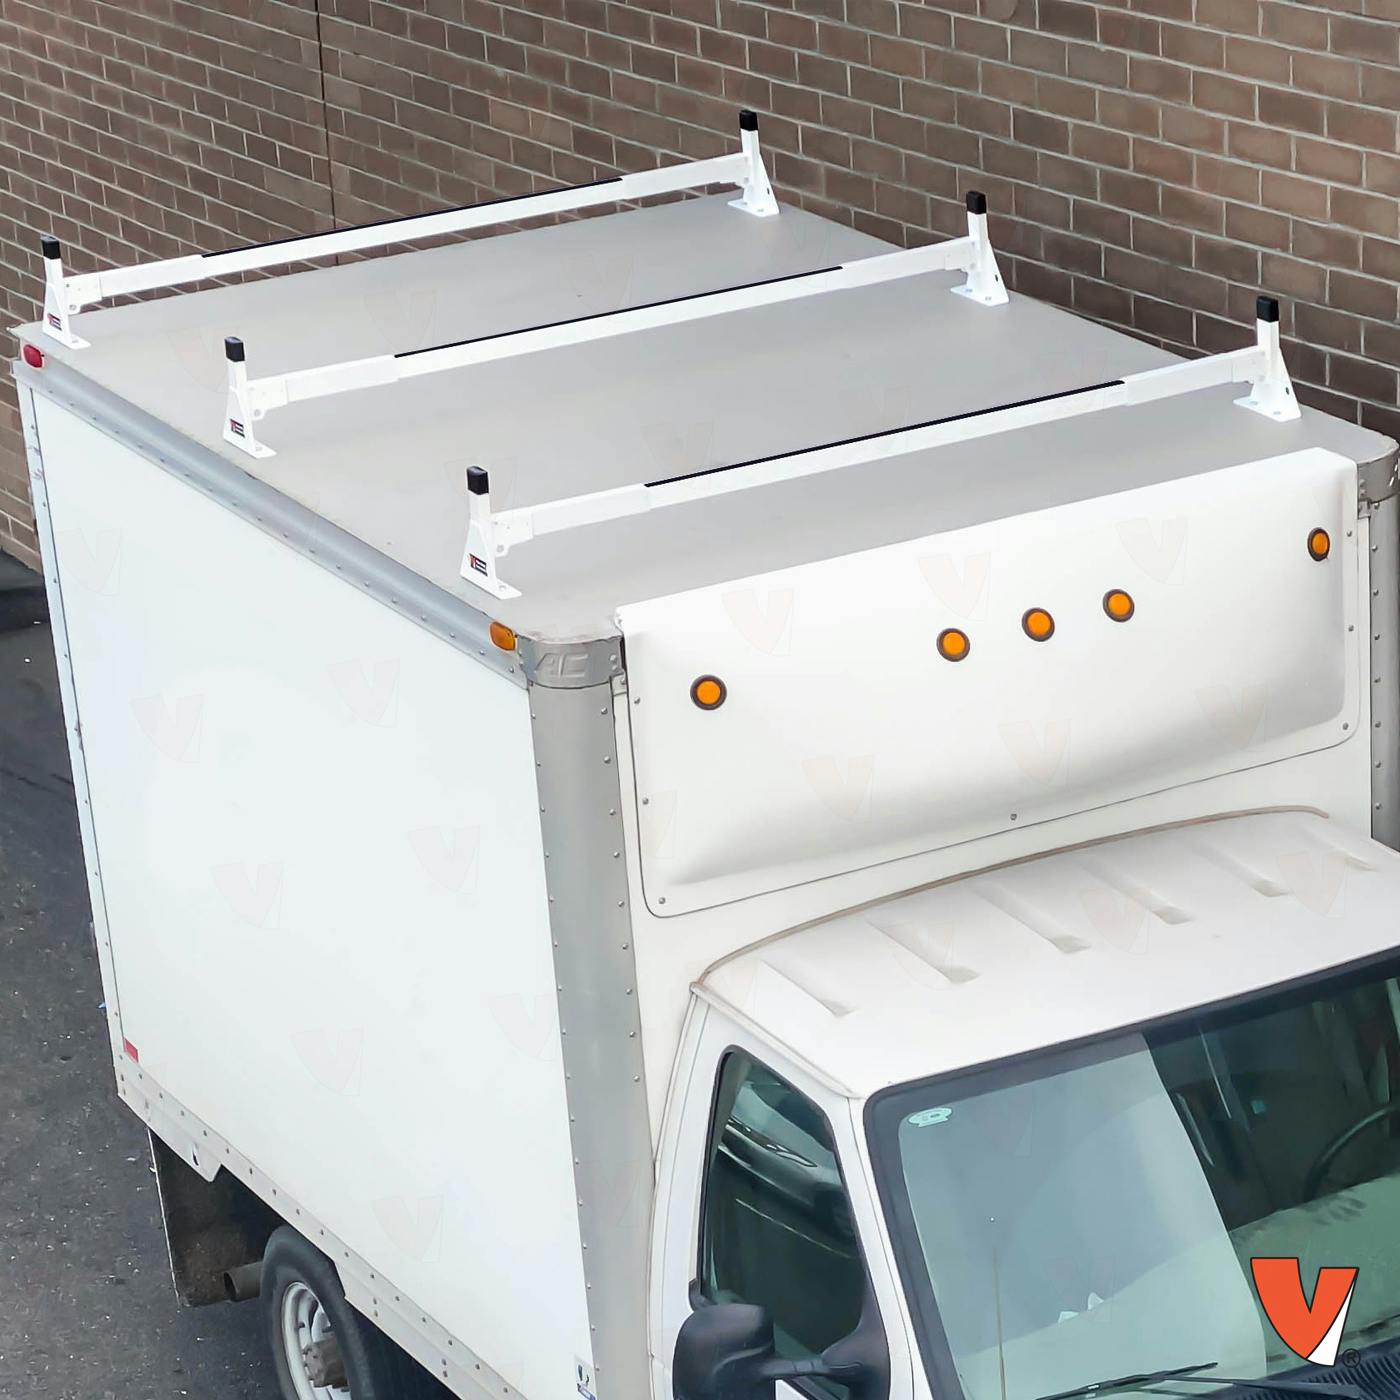 Vantech H1 Box Truck Aluminum Rack System - Top Mount 4